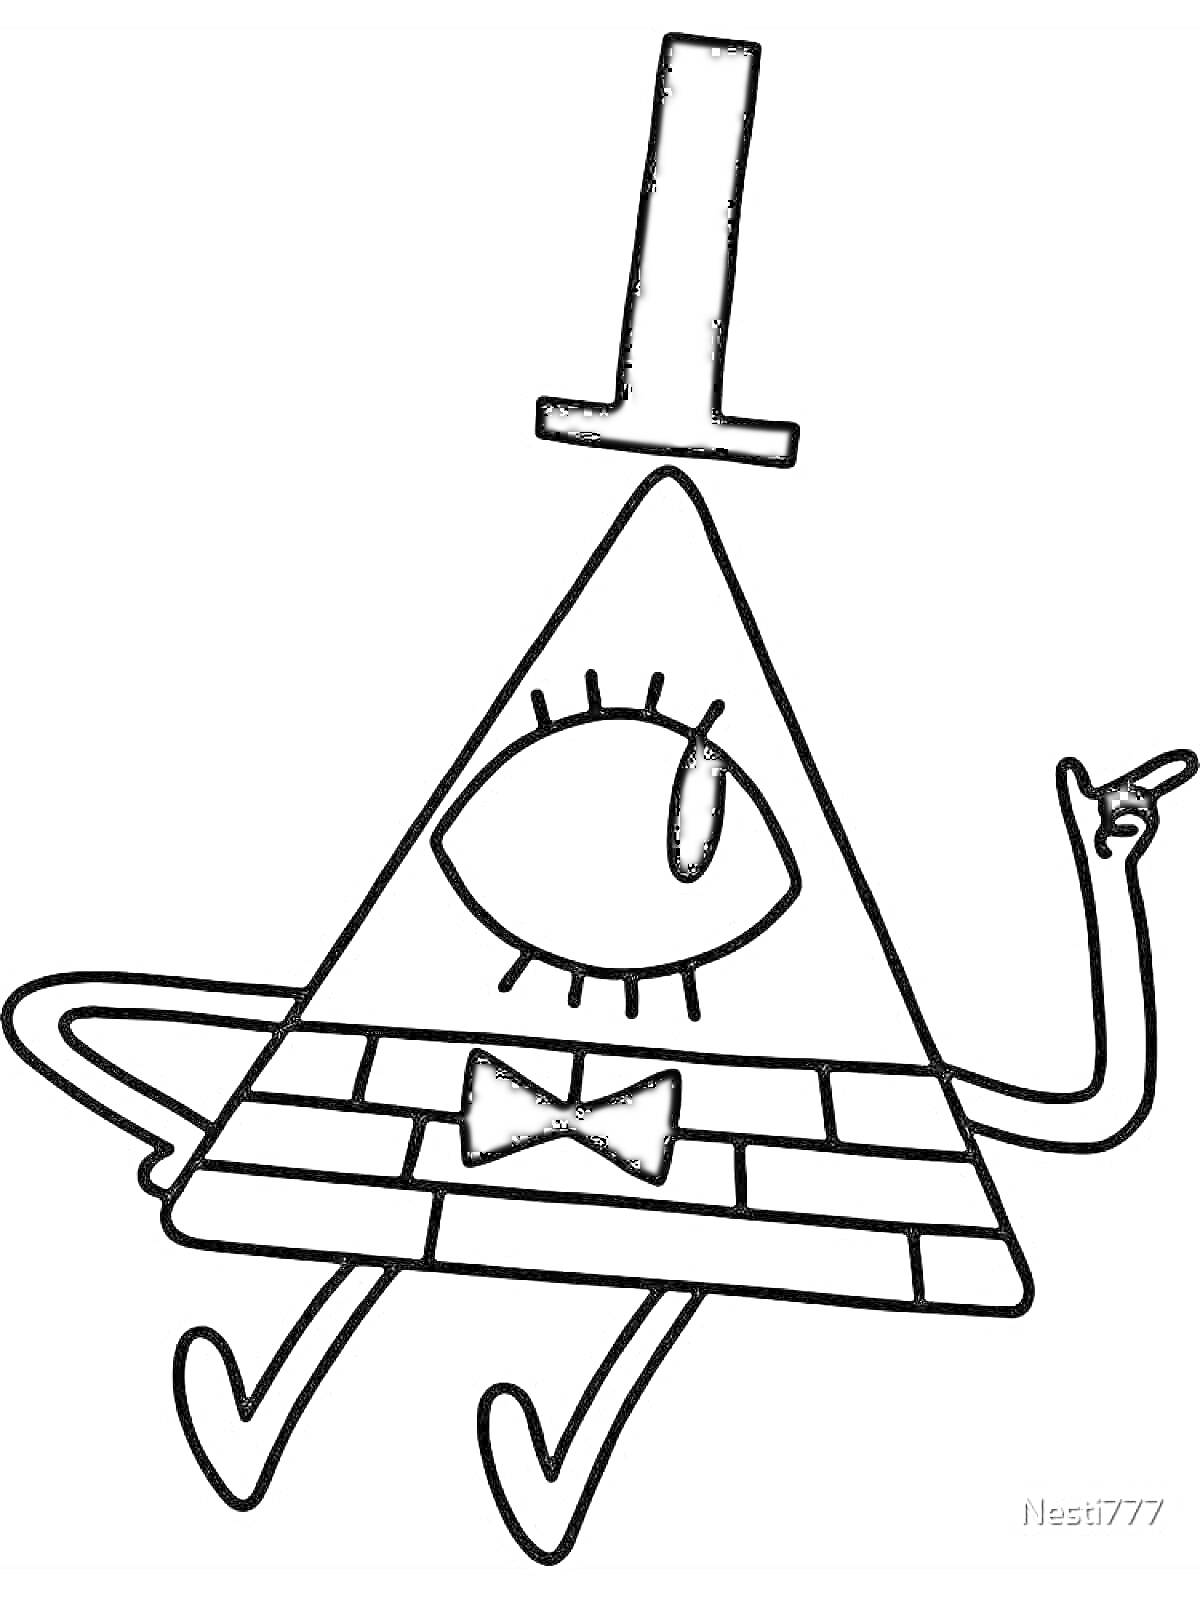 Раскраска Треугольный персонаж с одним глазом, шляпой и бабочкой, поднимающий палец вверх